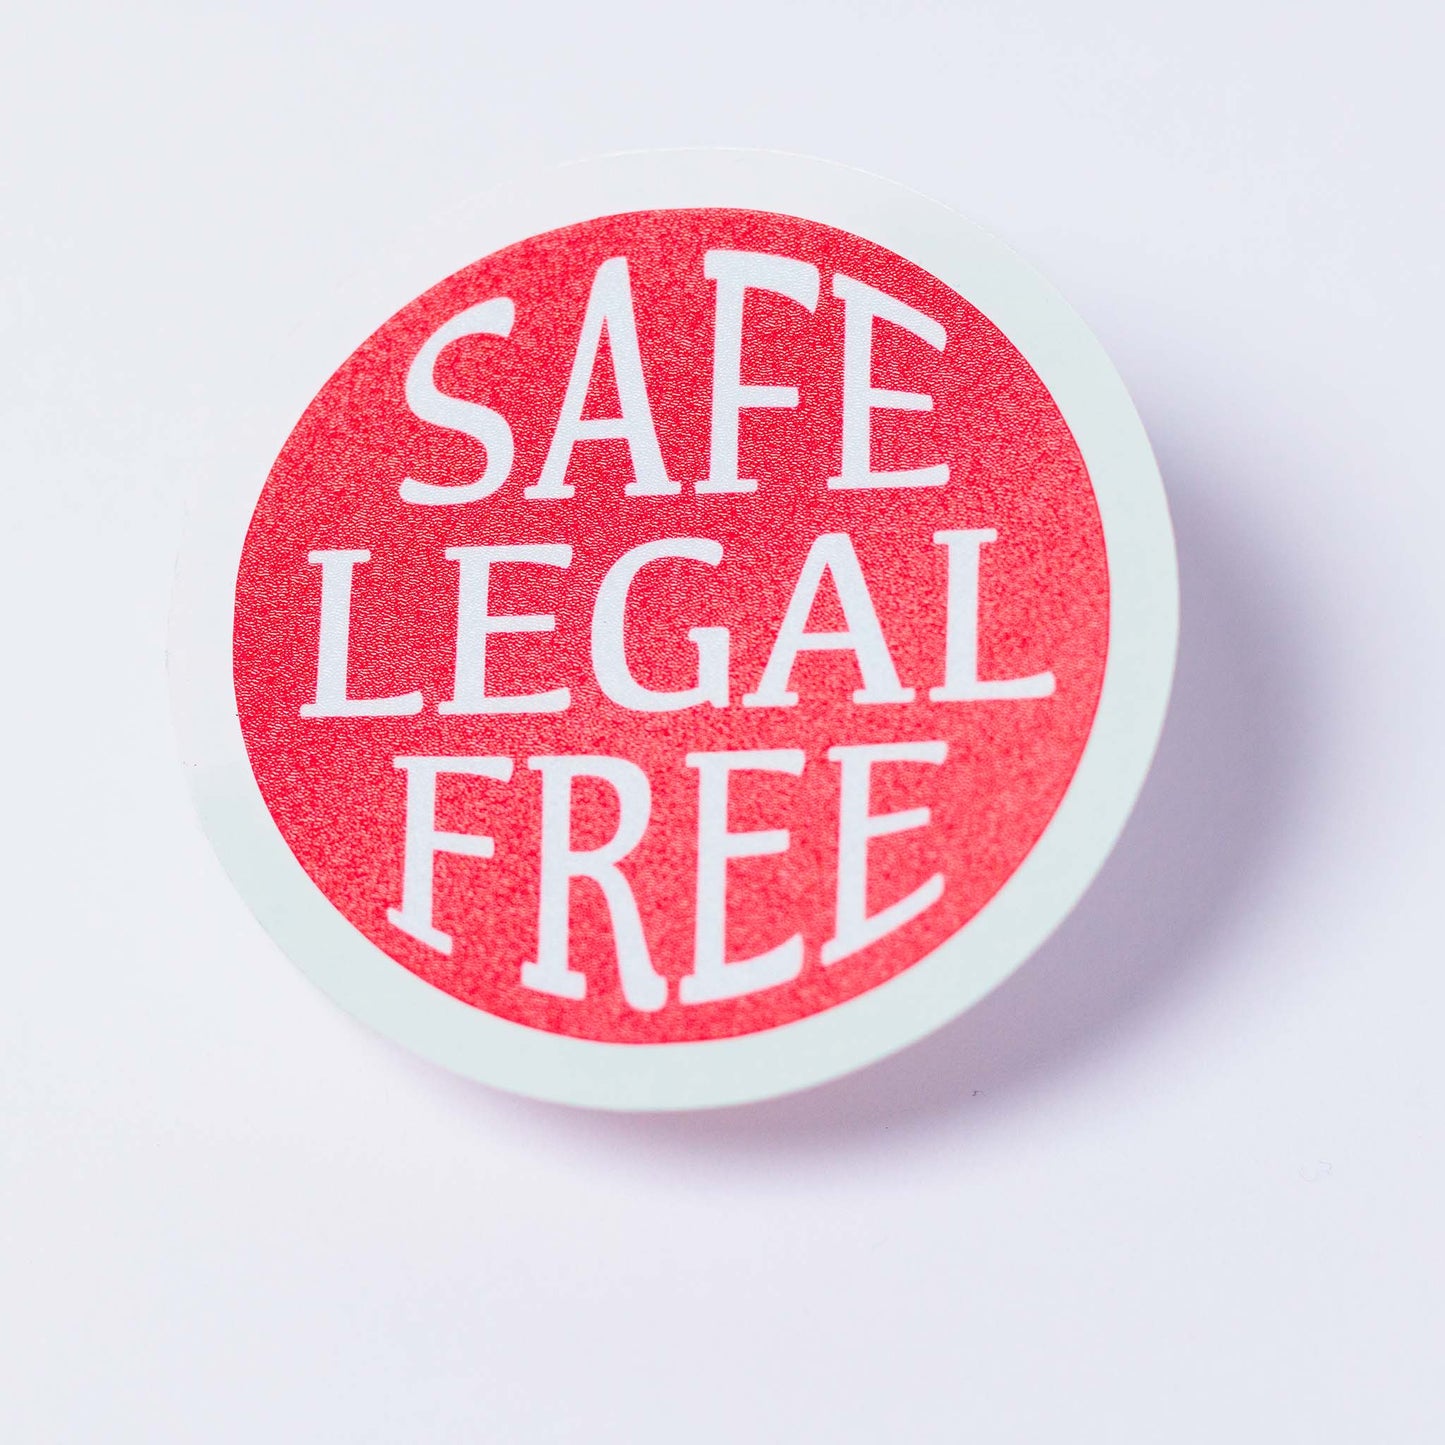 Safe Legal Free